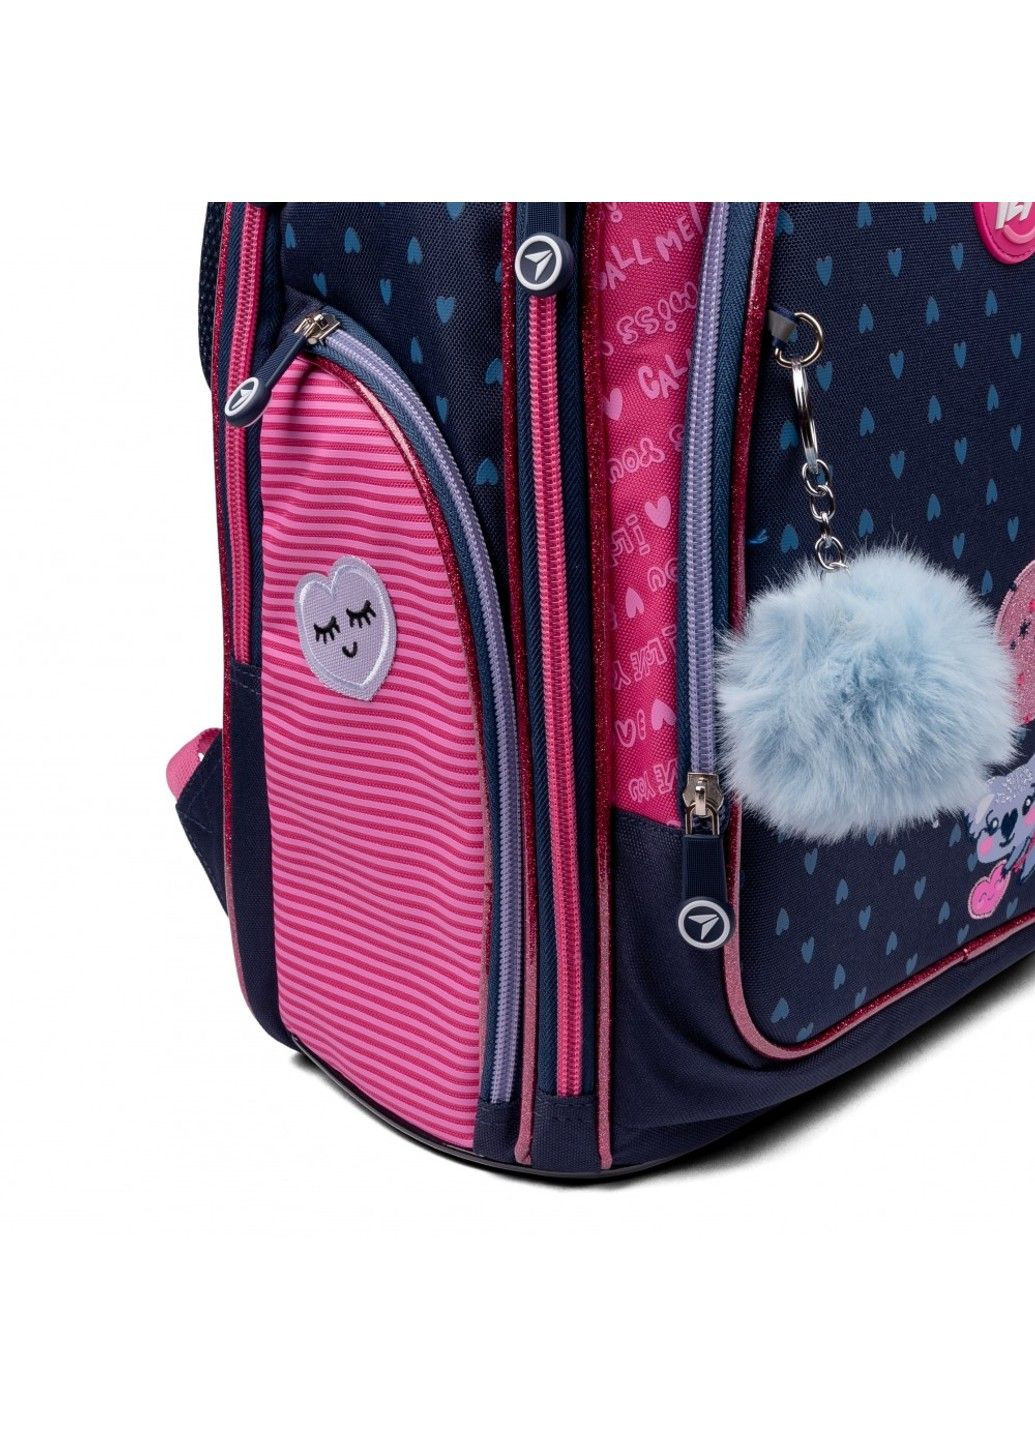 Шкільний рюкзак для молодших класів S-84 Hi koala! Yes (278404522)